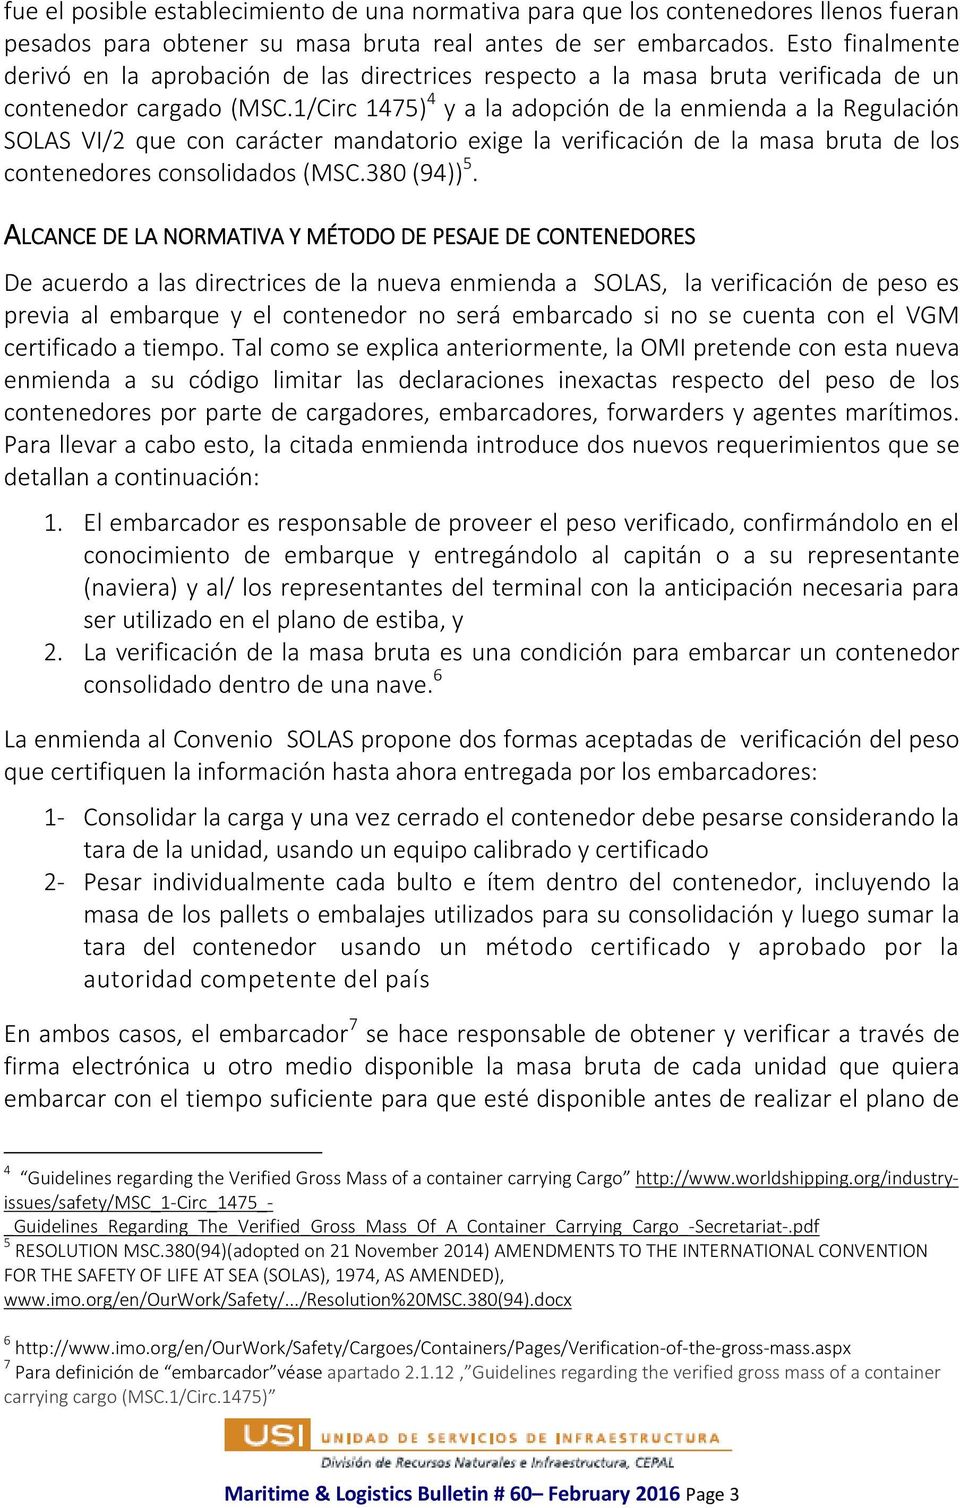 1/Circ 1475) 4 y a la adopción de la enmienda a la Regulación SOLAS VI/2 que con carácter mandatorio exige la verificación de la masa bruta de los contenedores consolidados (MSC.380 (94)) 5.